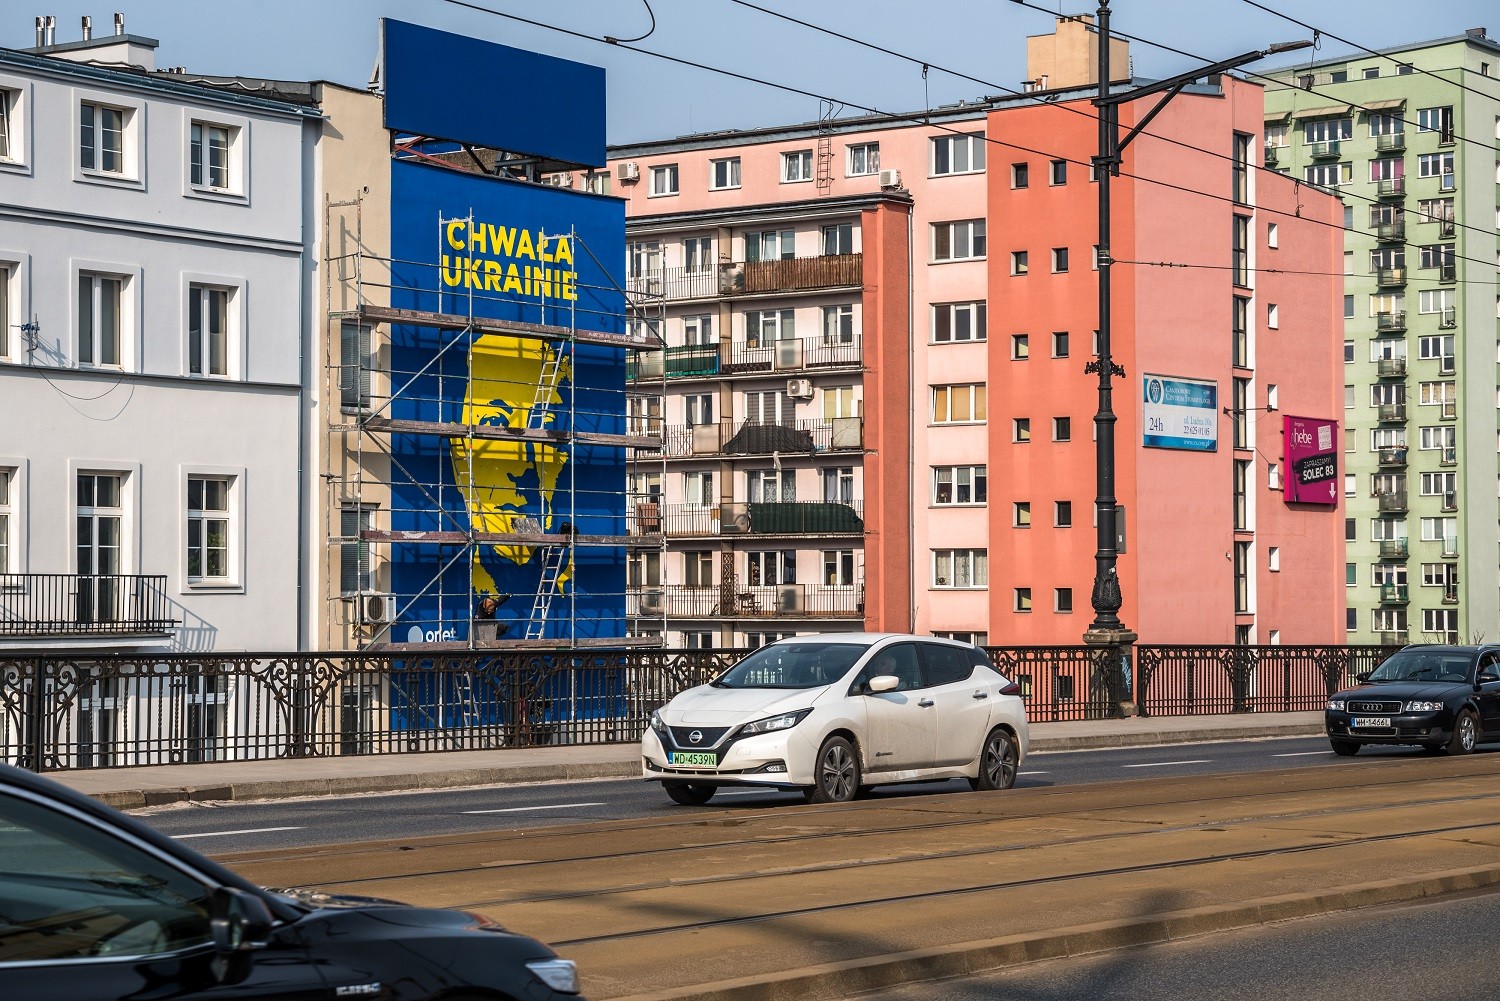 Ręcznie malowana reklama wielkoformatowa  | CHWAŁA UKRAINIE | Portfolio